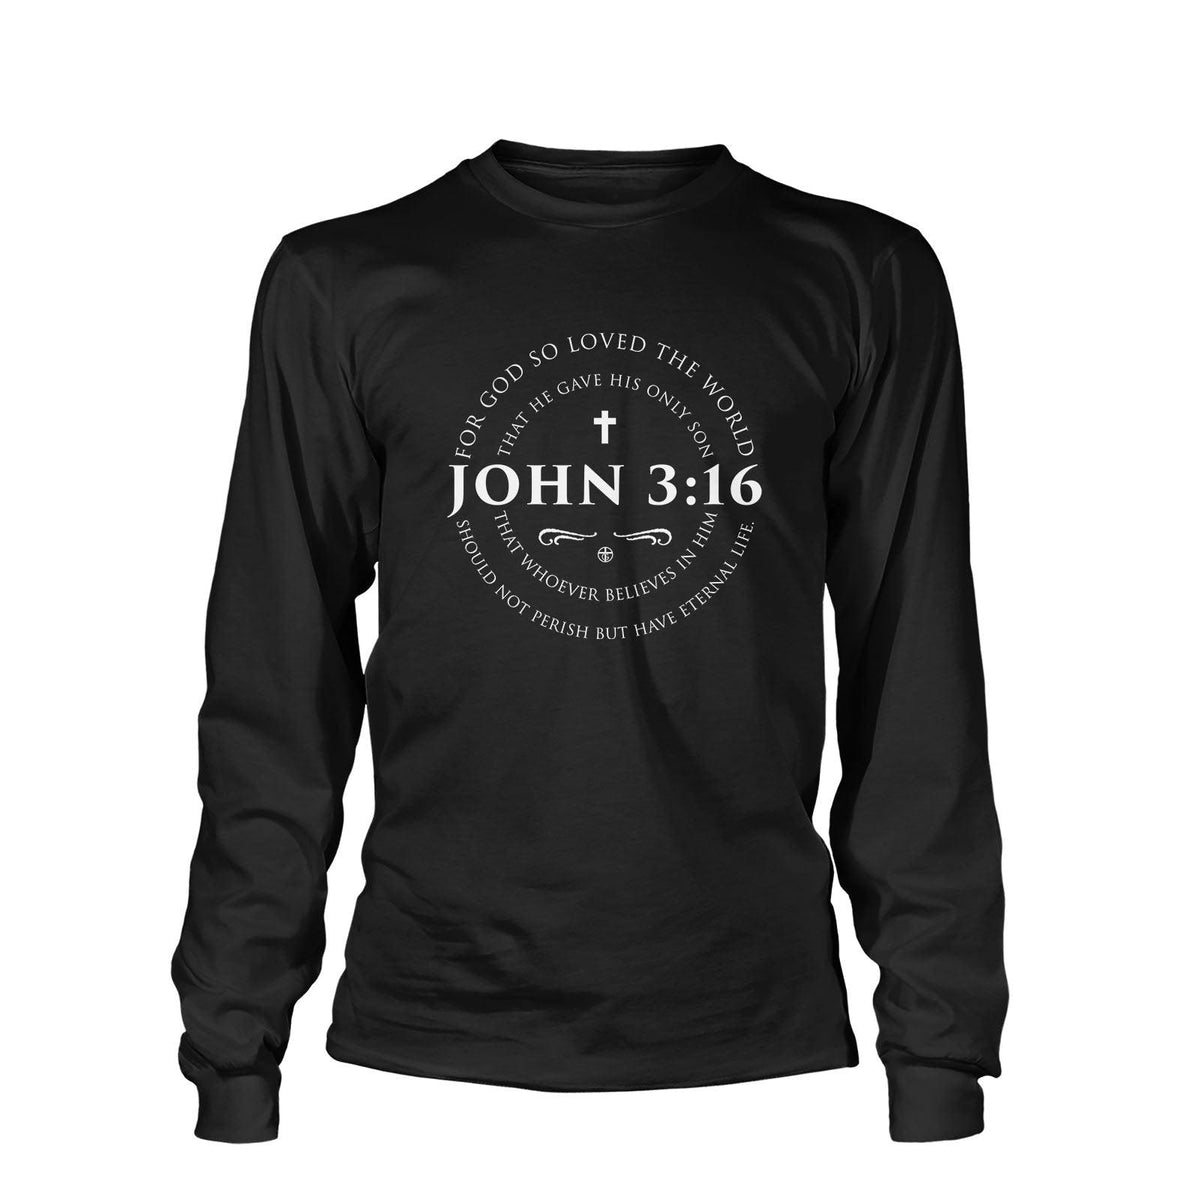 John 3:16 Long Sleeves - Our True God